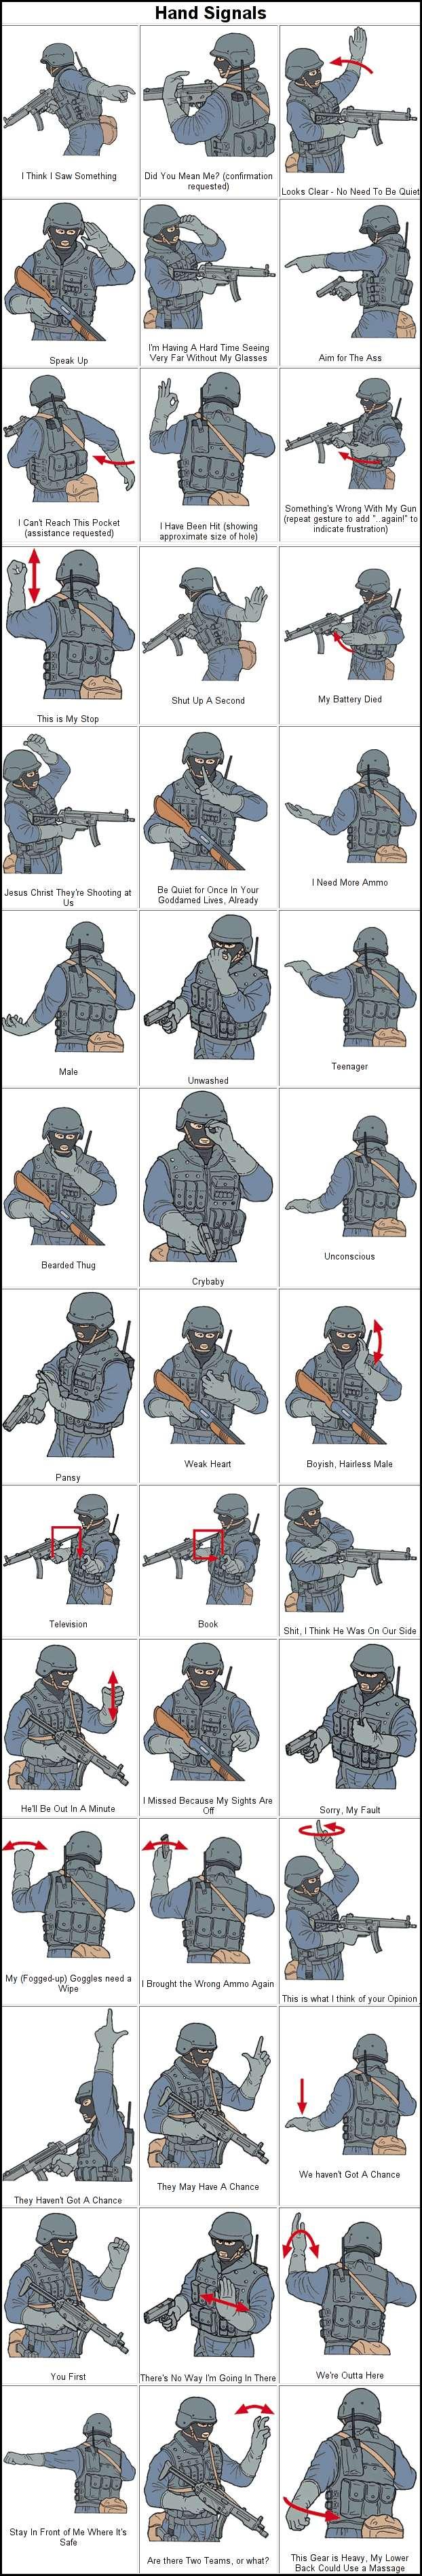 SWAT_hand_signals.jpg